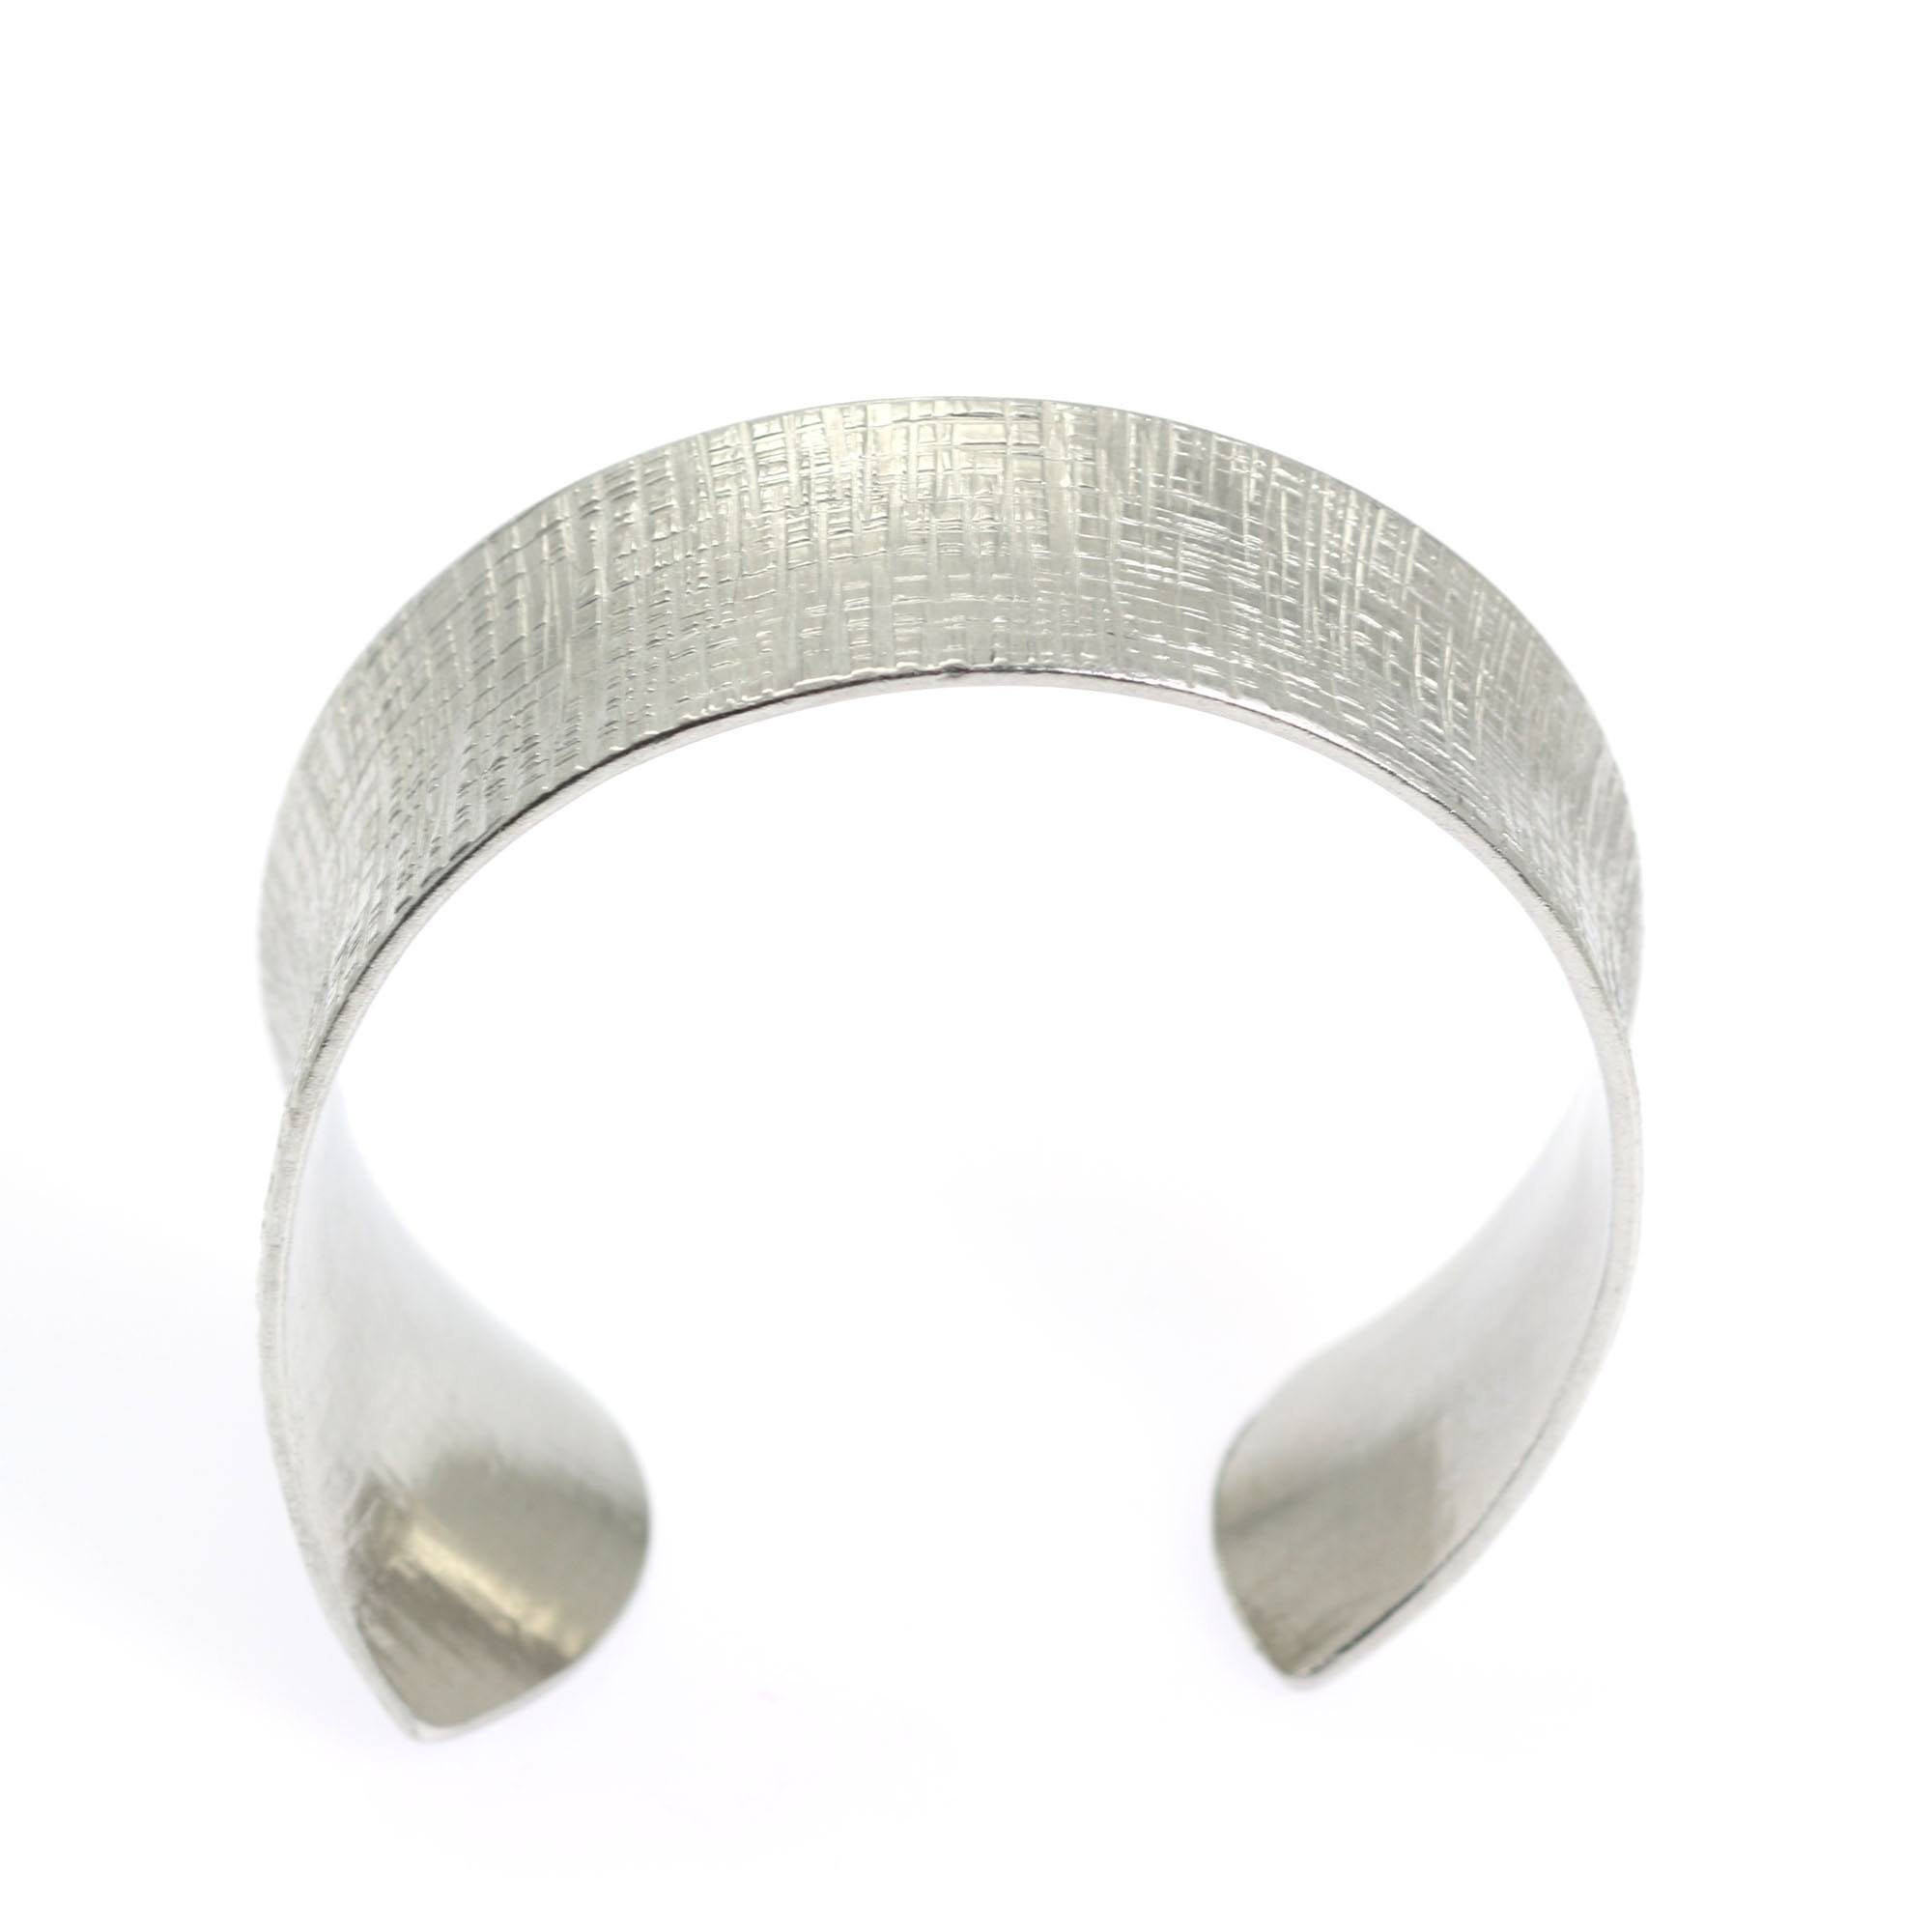 Shape of Anticlastic Tapered Linen Aluminum Bangle Bracelet